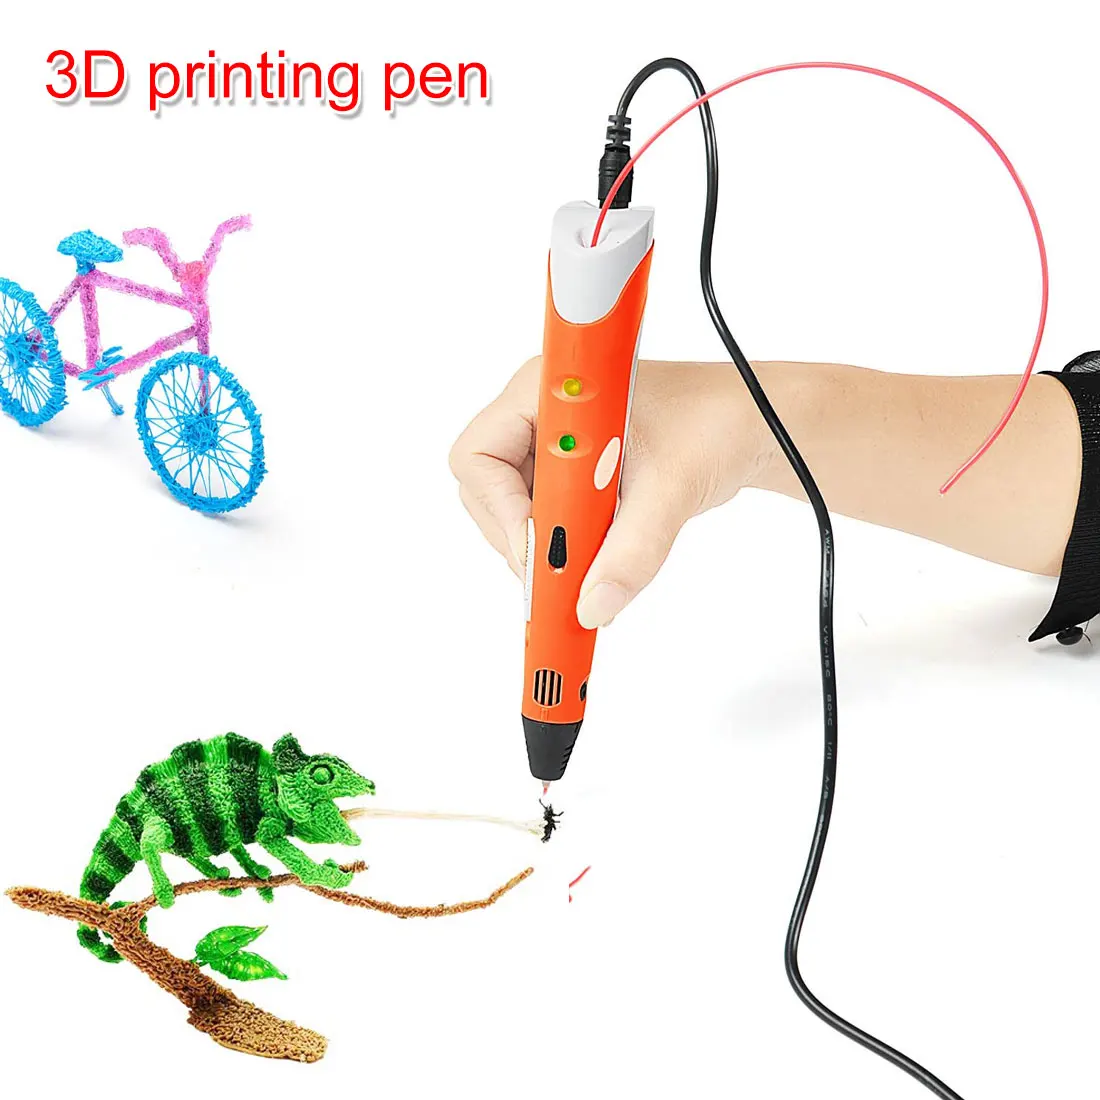 3D Ручка DIY трехмерная картина игрушка 3D печать Ручка детский дизайн рисунок креативная игрушка подарок